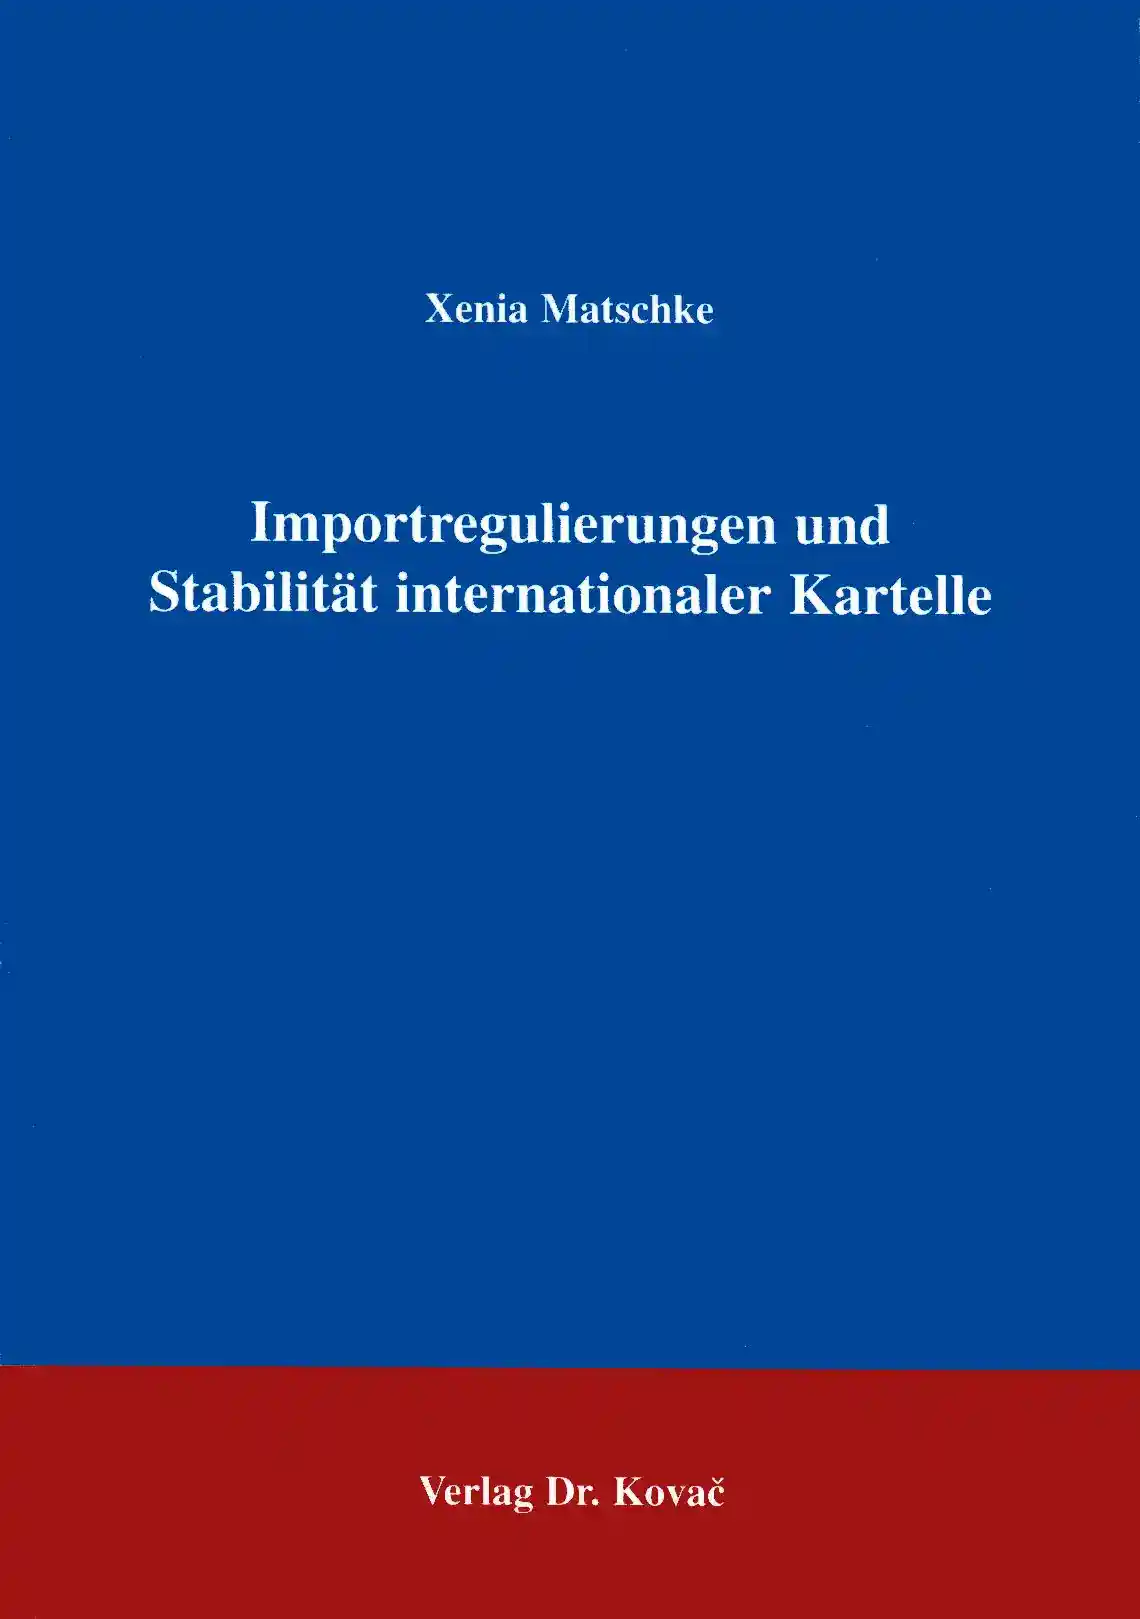 Importregulierungen und Stabilität internationaler Kartelle (Forschungsarbeit)